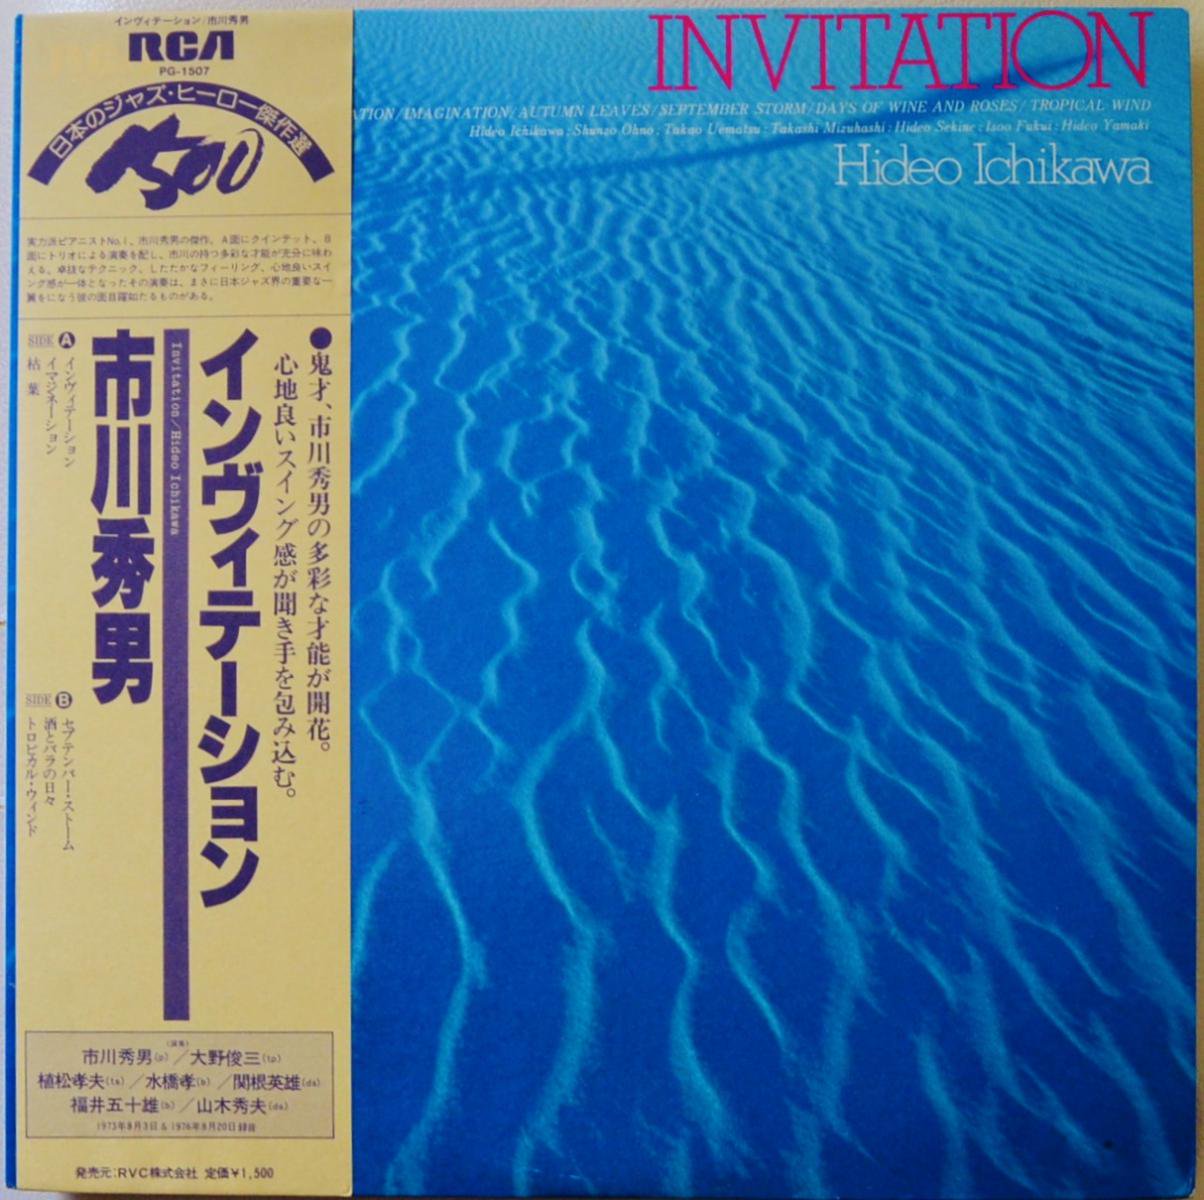 市川秀男 HIDEO ICHIKAWA / インヴィテーション INVITATION (LP)